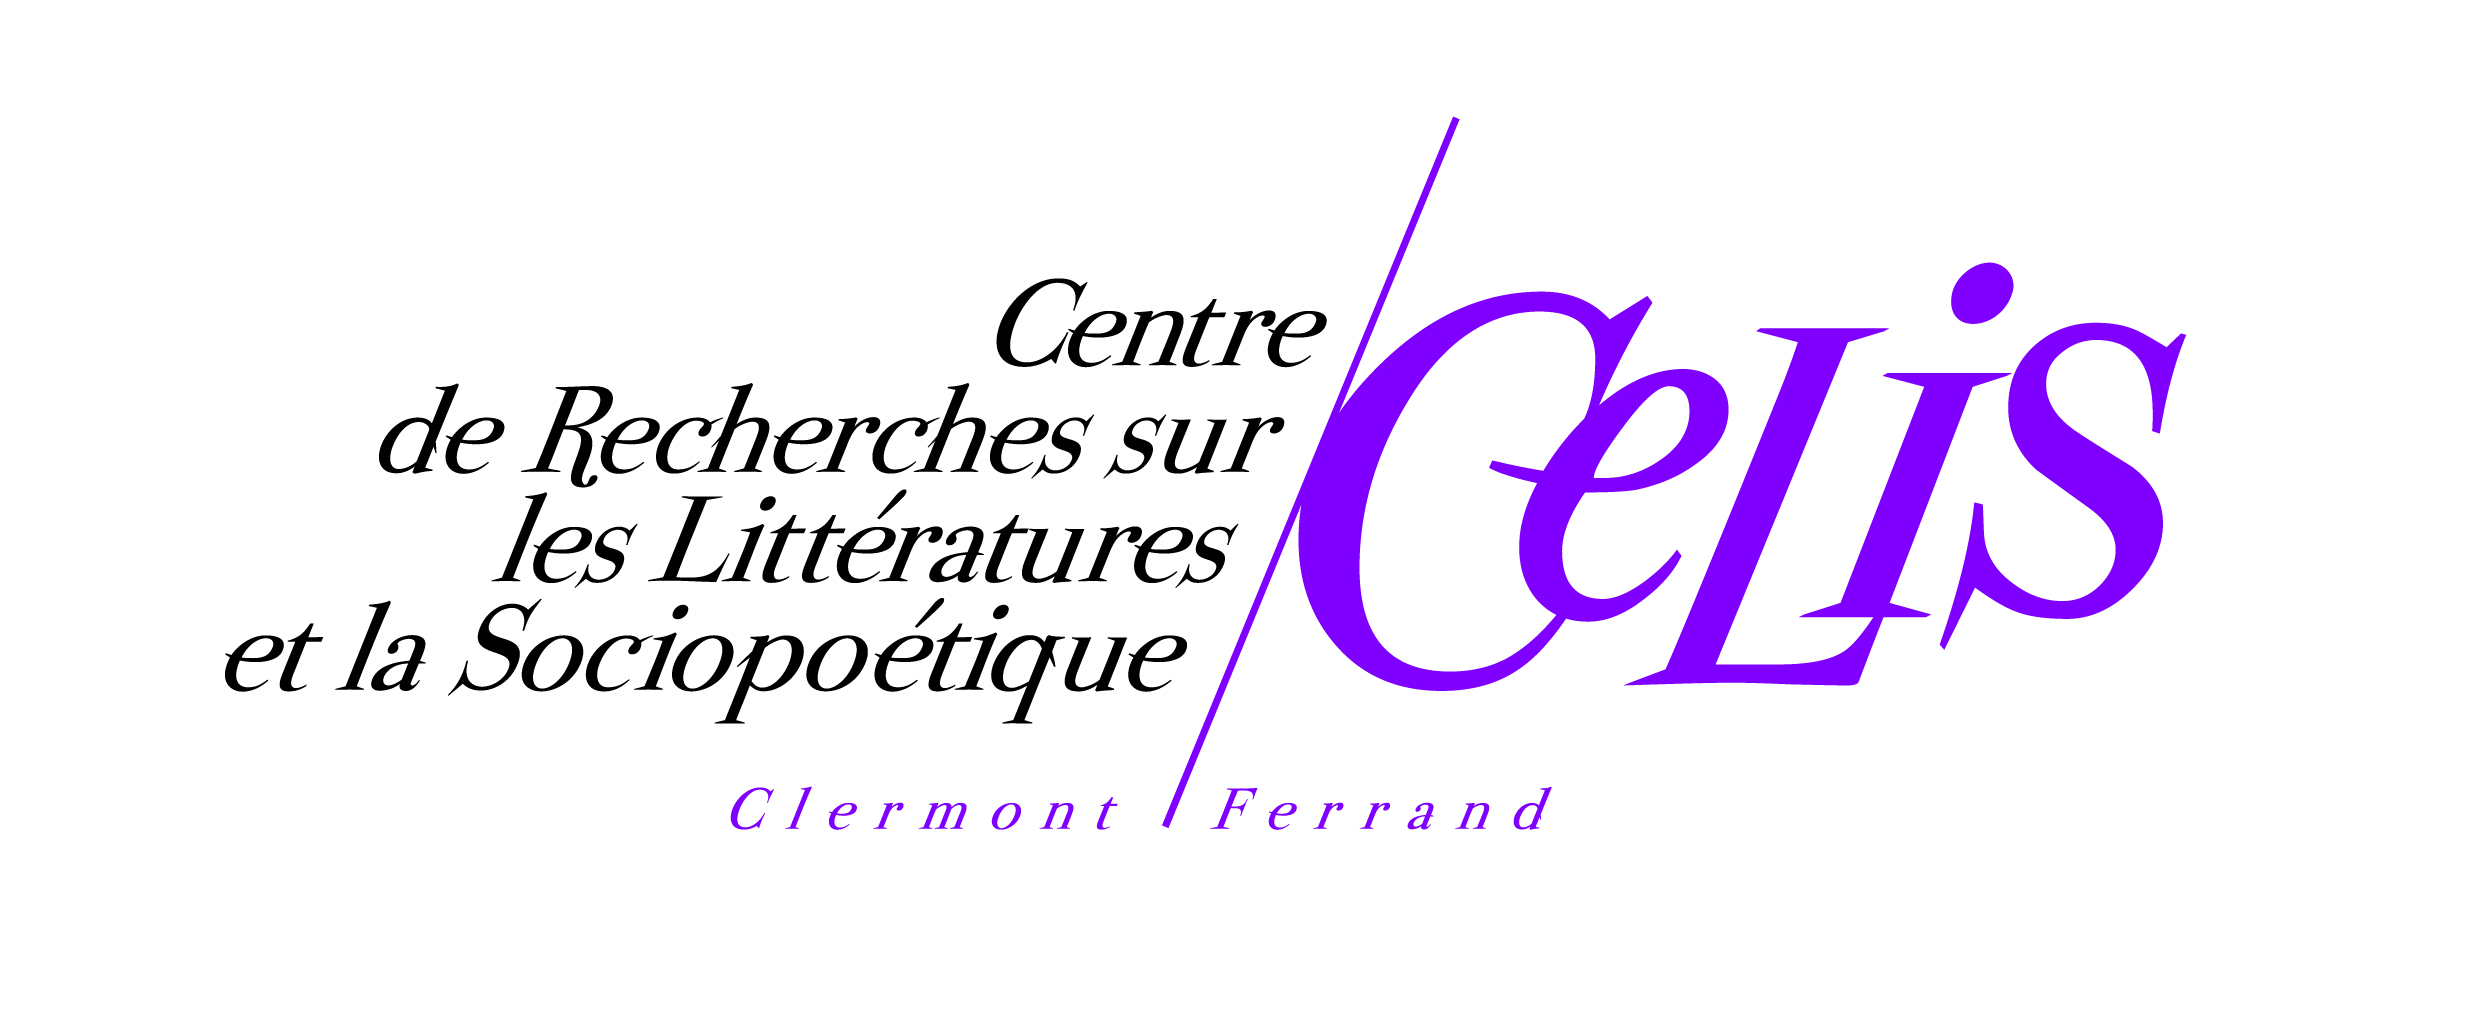 Logo_CELIS_quadri_1.jpg